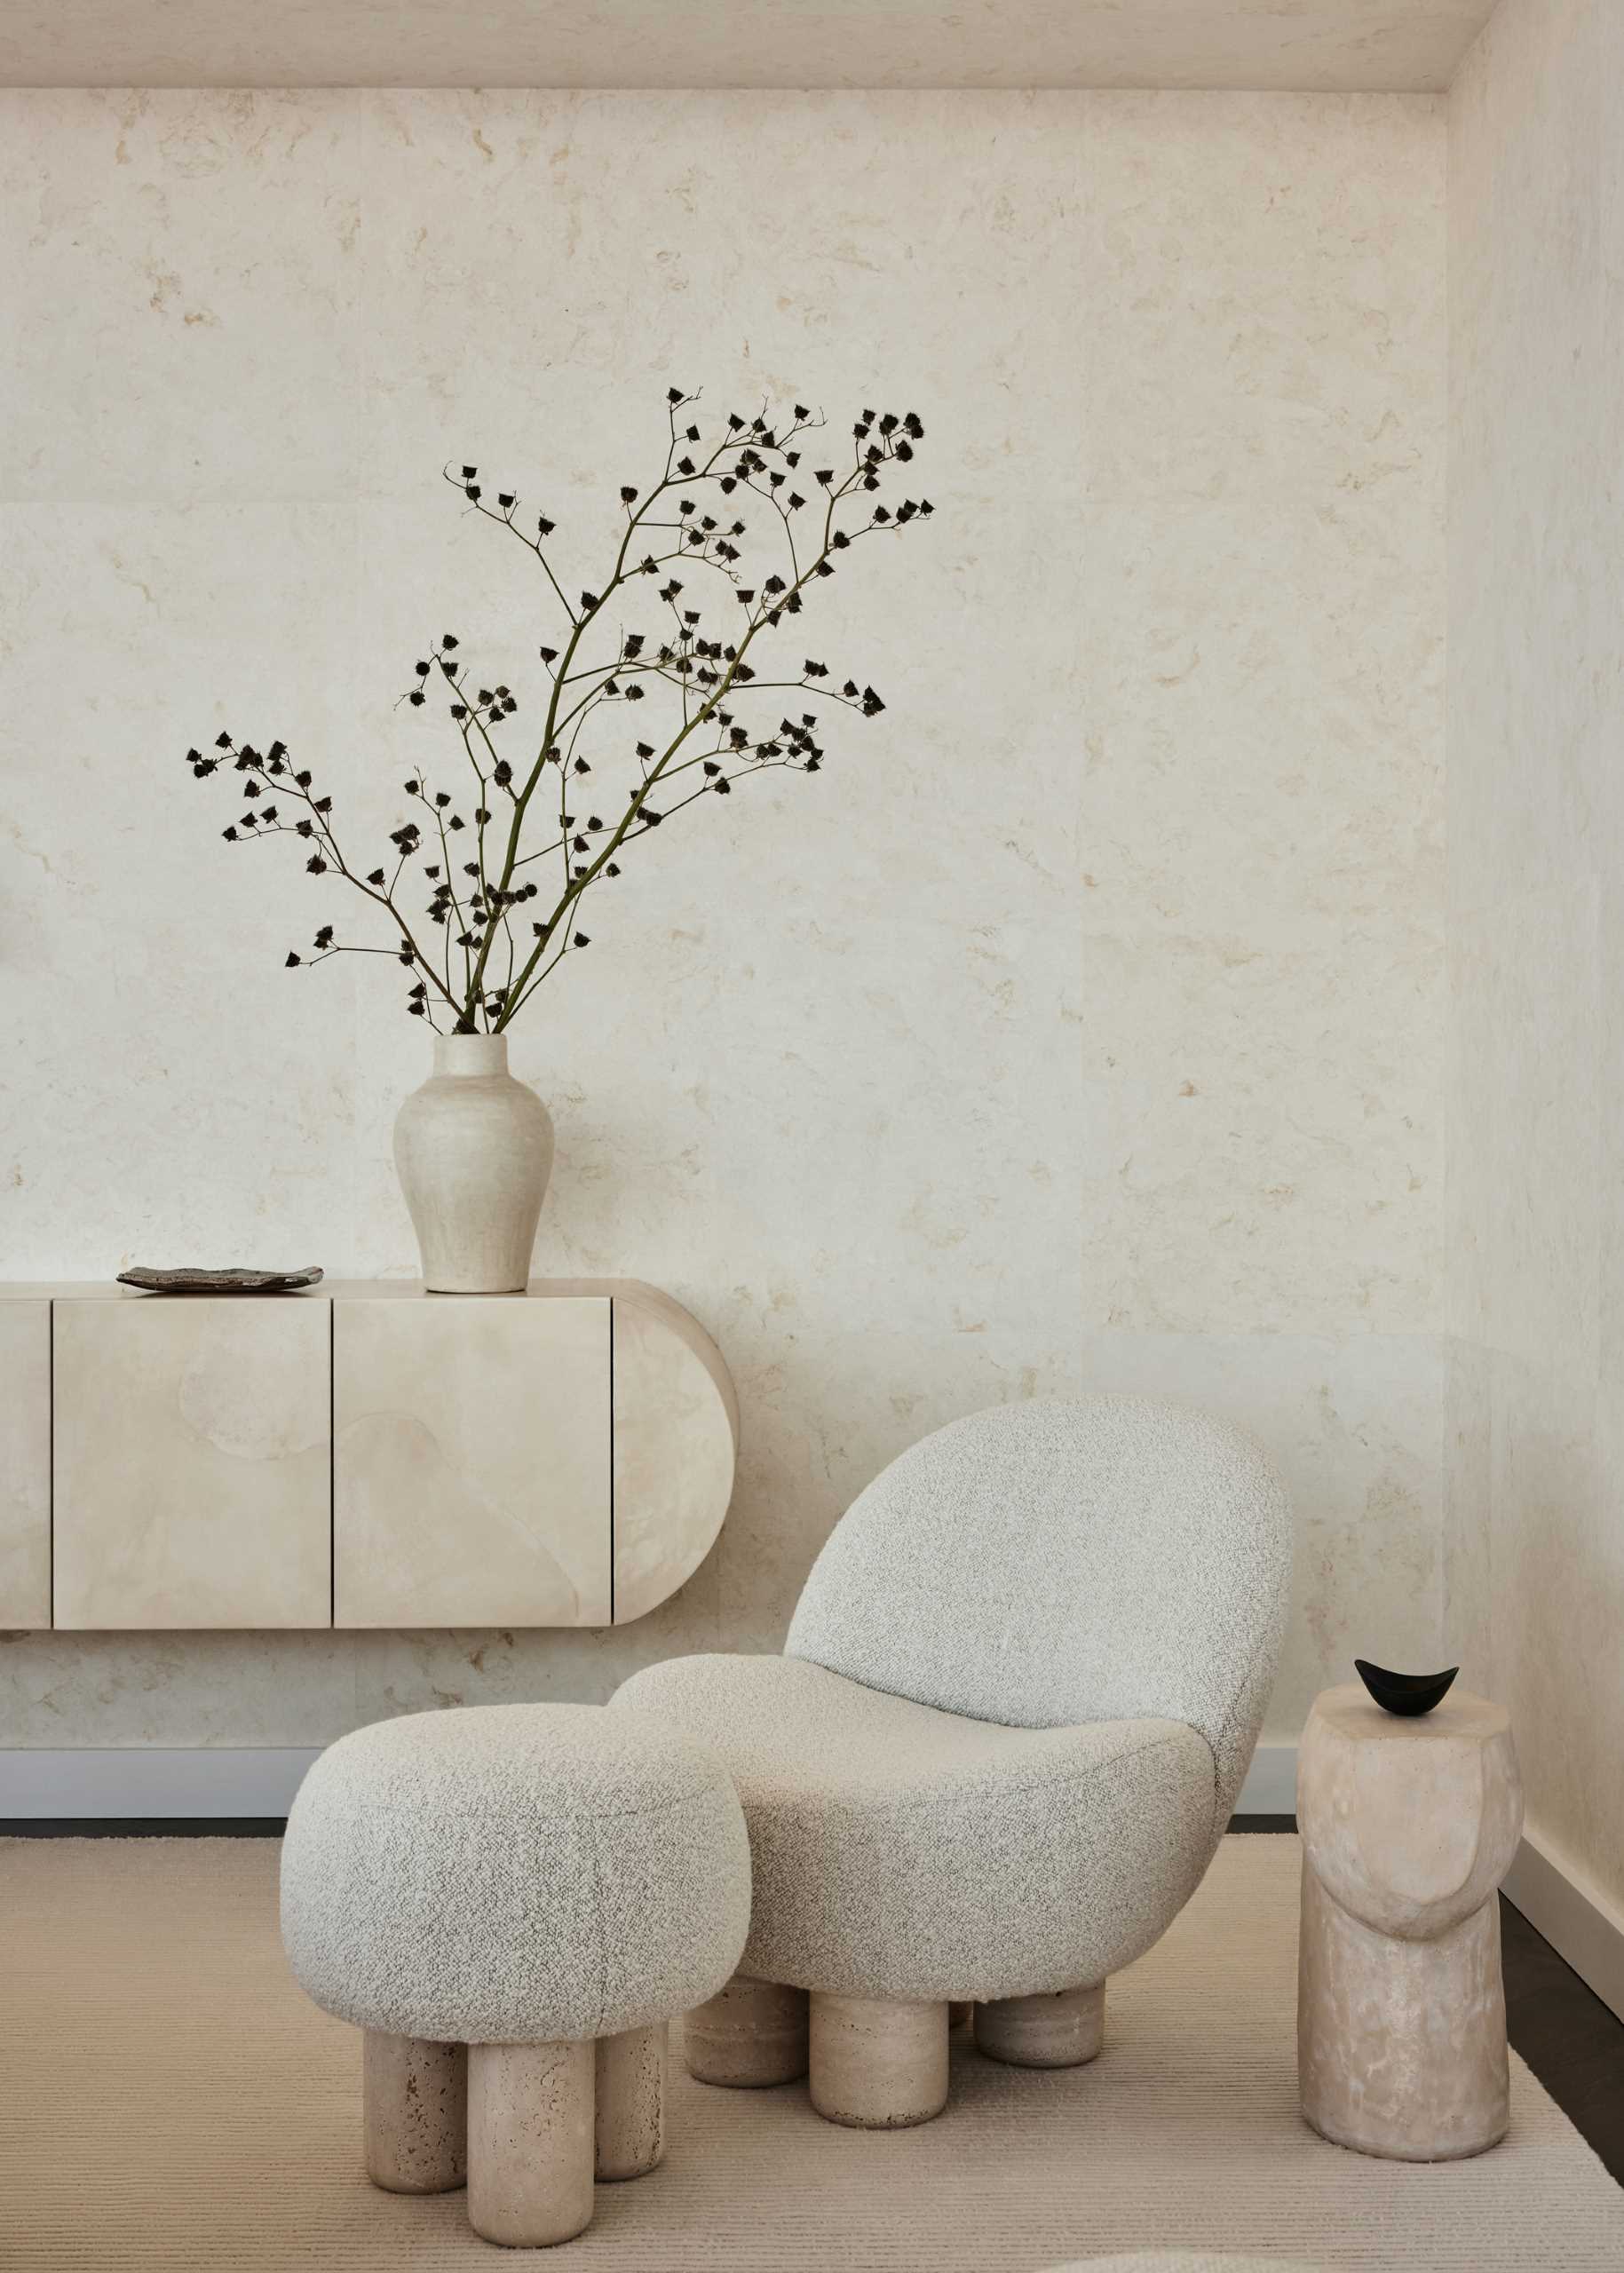 صندلی‌ها و میزهای کناری مدرن به همراه فانوس نوگوچی فضای نشیمن این اتاق نشیمن را کامل می‌کنند.